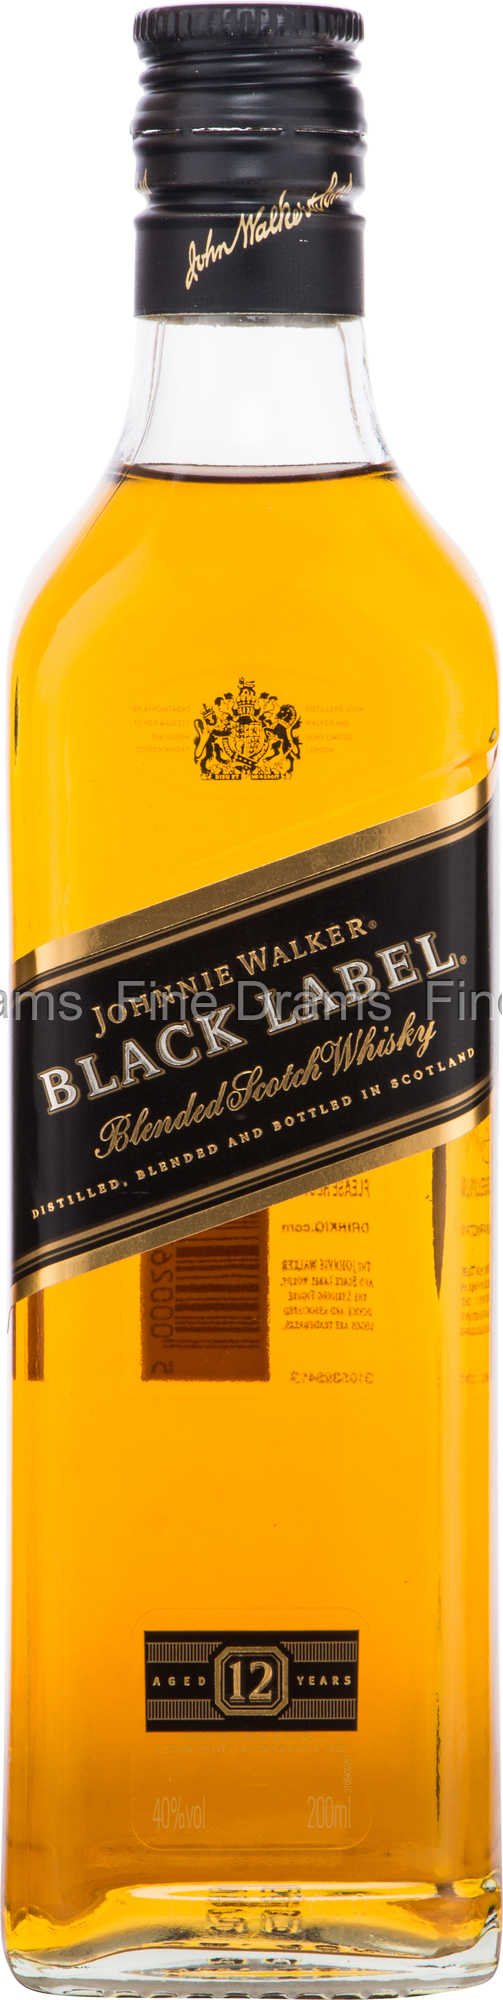 Johnnie Walker Black Label Scotch 200ml